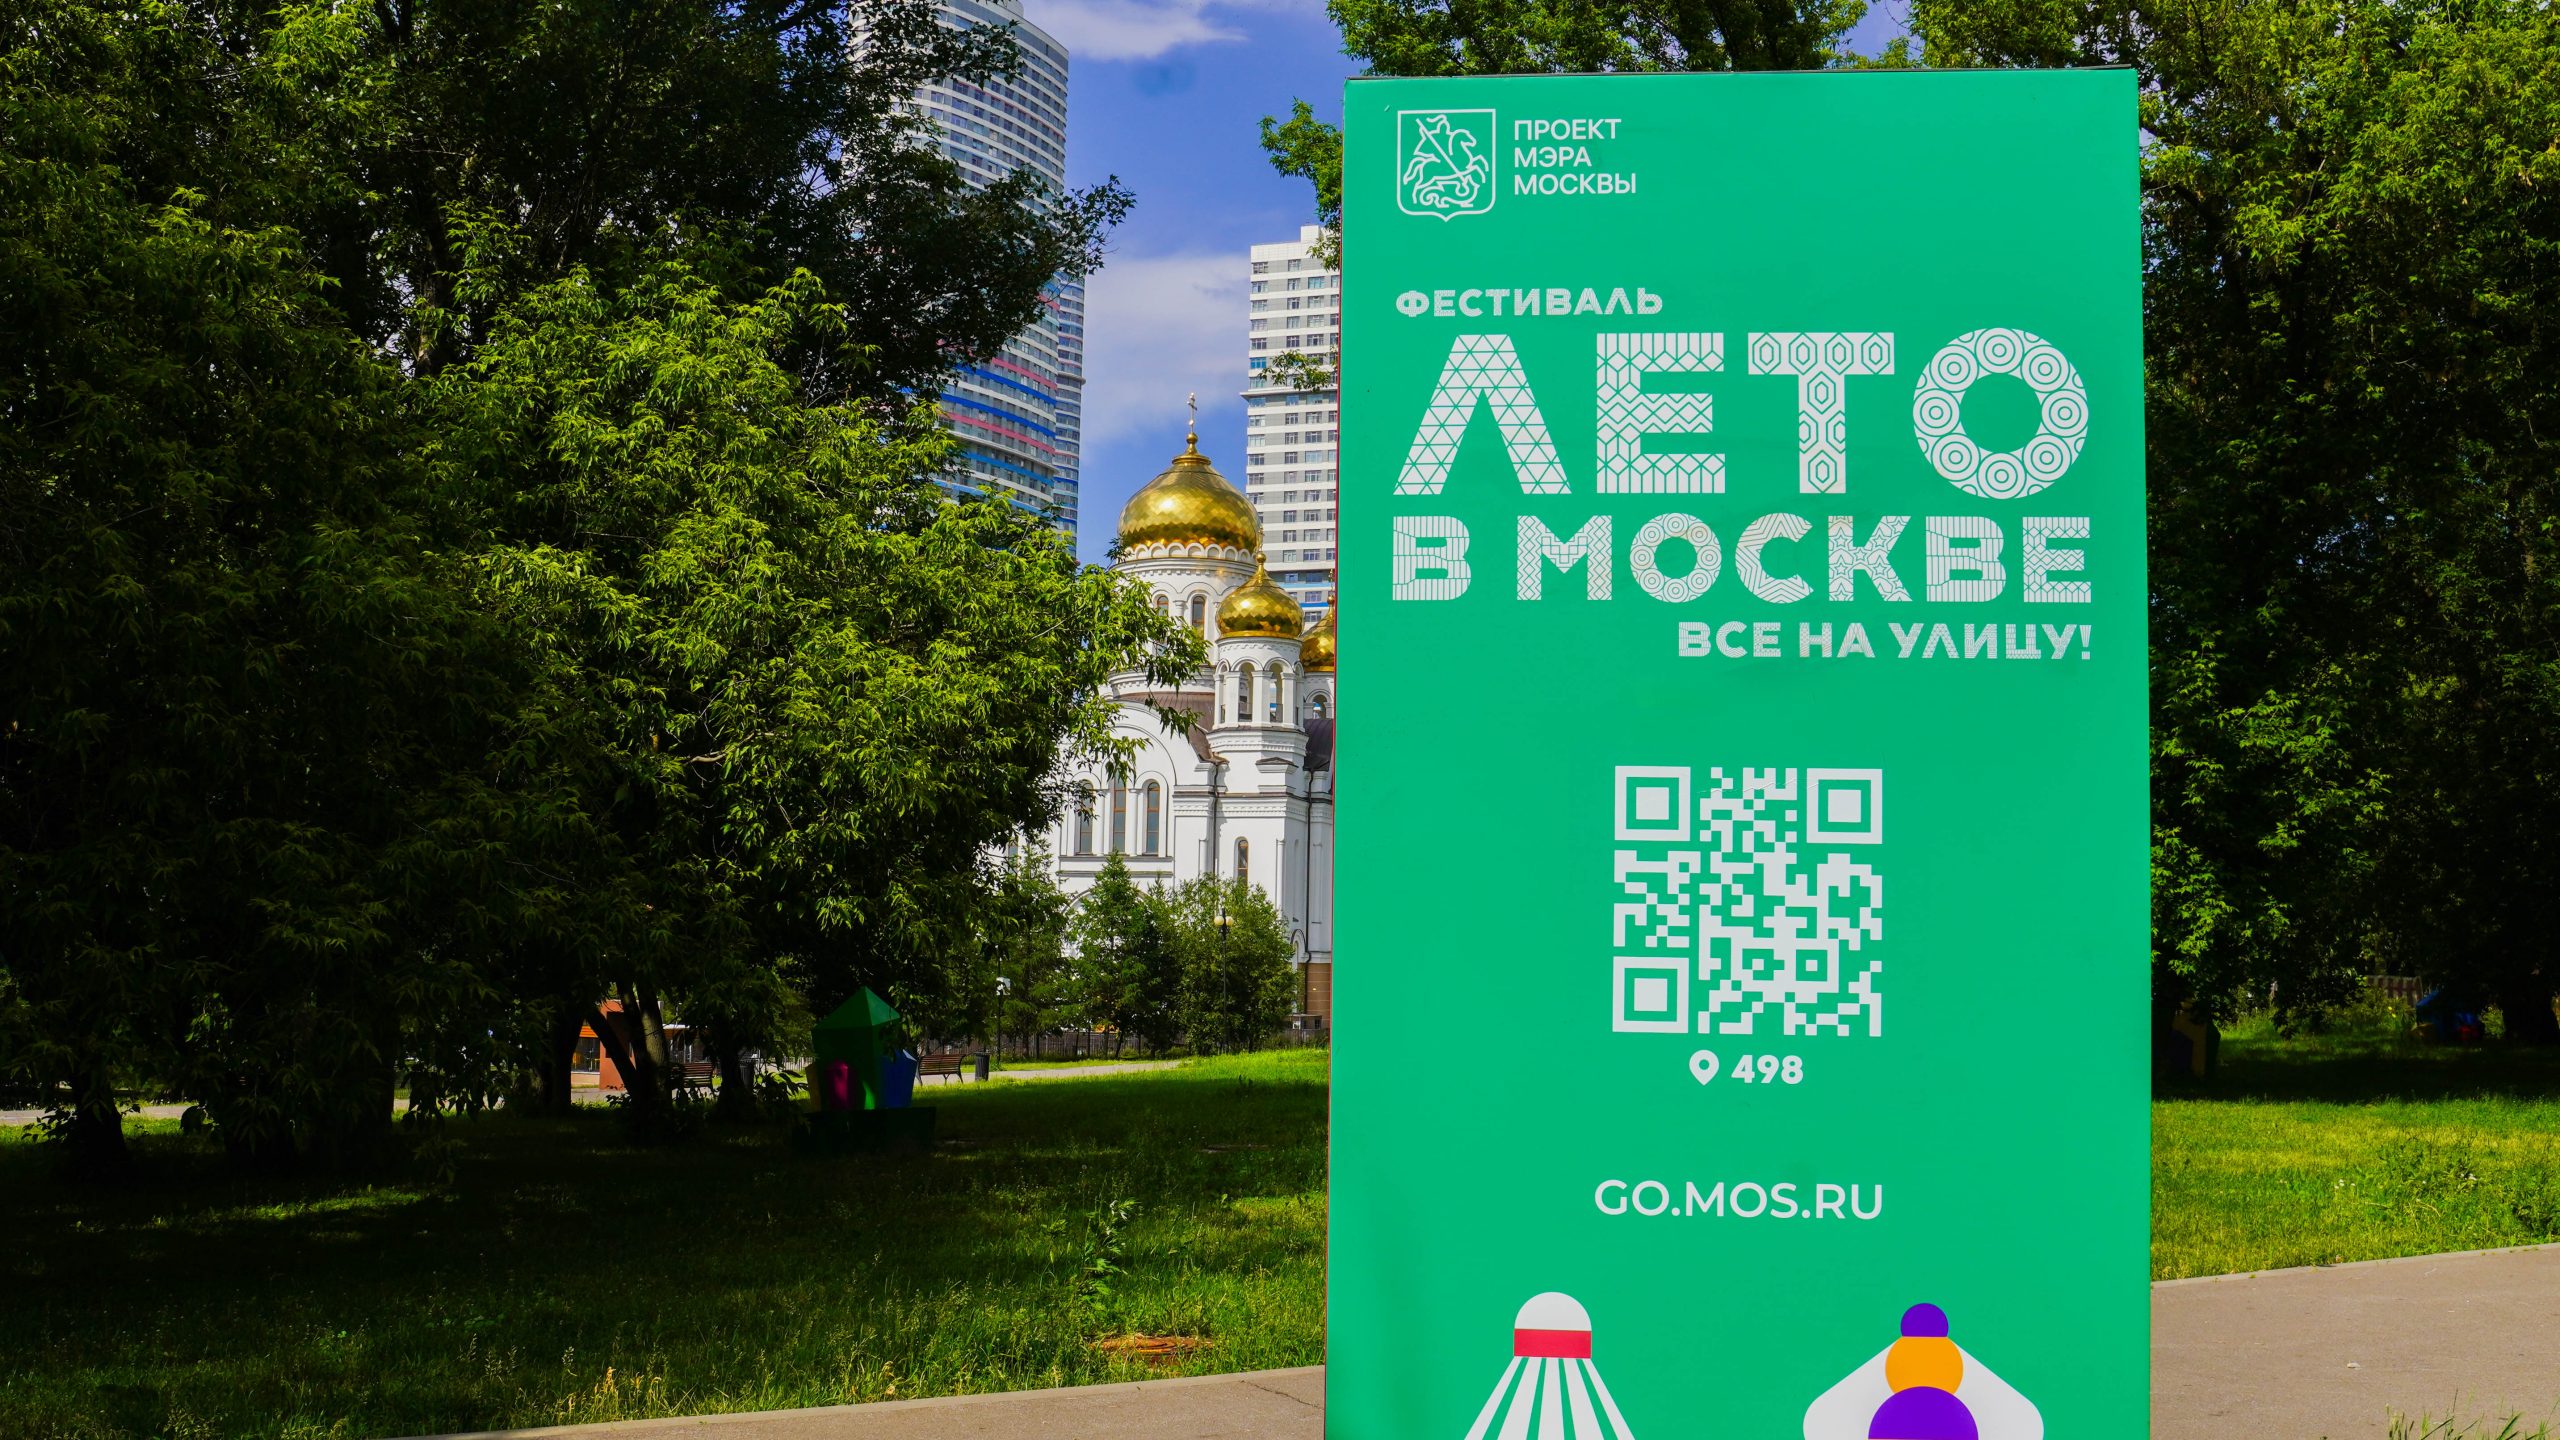 Более 600 площадок «Лета в Москве. Все на улицу!» ждет горожан в эти выходные